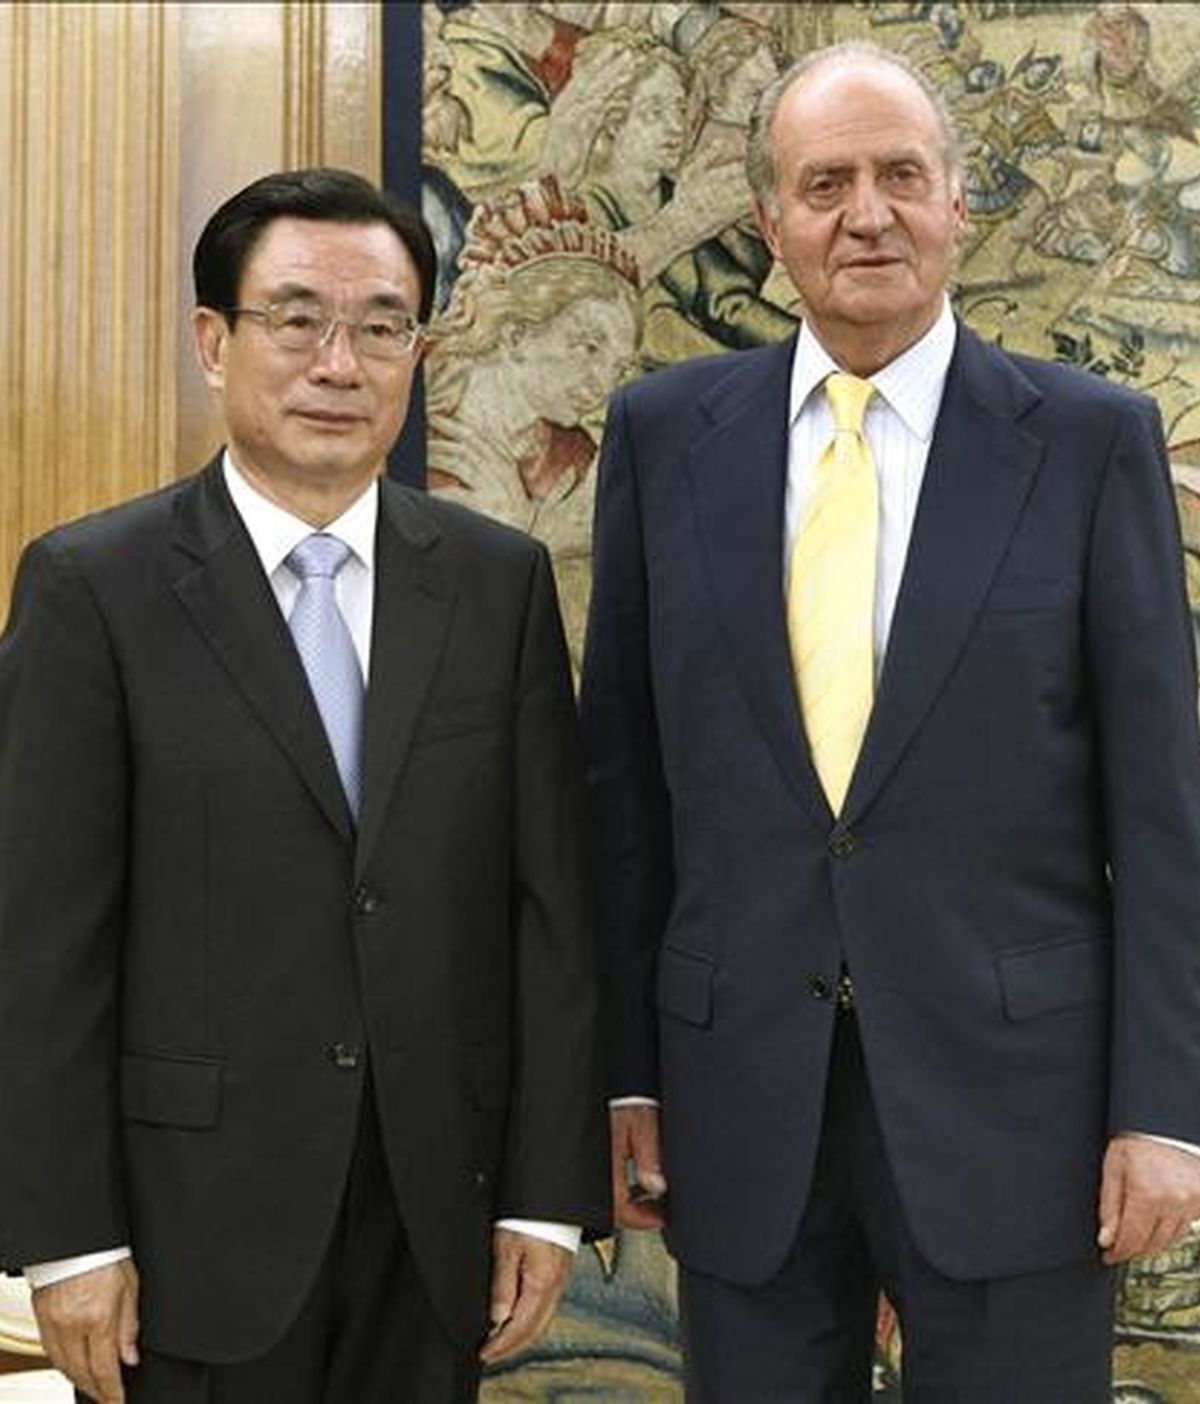 El rey Juan Carlos posa junto a He Guoqiang, miembro del Comité Permanente del Buró Político del Comité Central del Partido Comunista de China al inicio de la audiencia que le ha ofrecido esta tarde en el Palacio de la Zarzuela. EFE